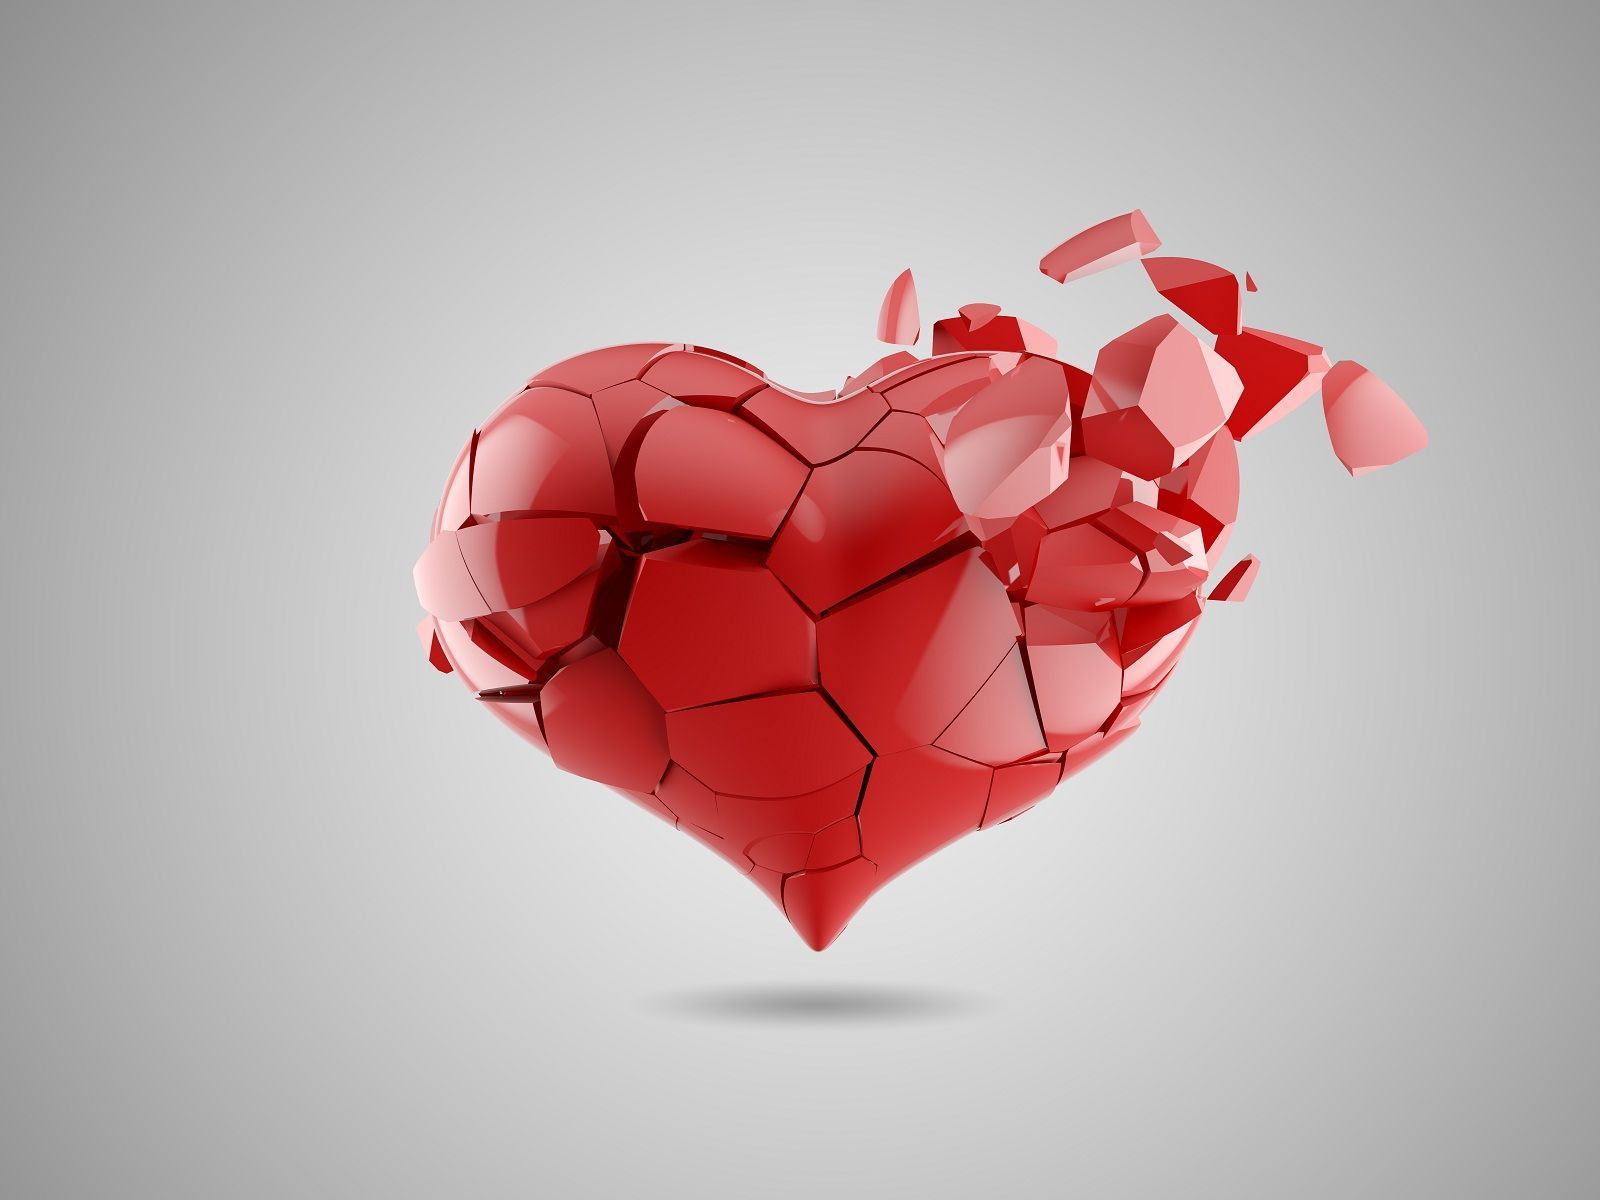 best broken heart whatsapp dp image. Broken heart wallpaper, Heart wallpaper, Broken heart picture